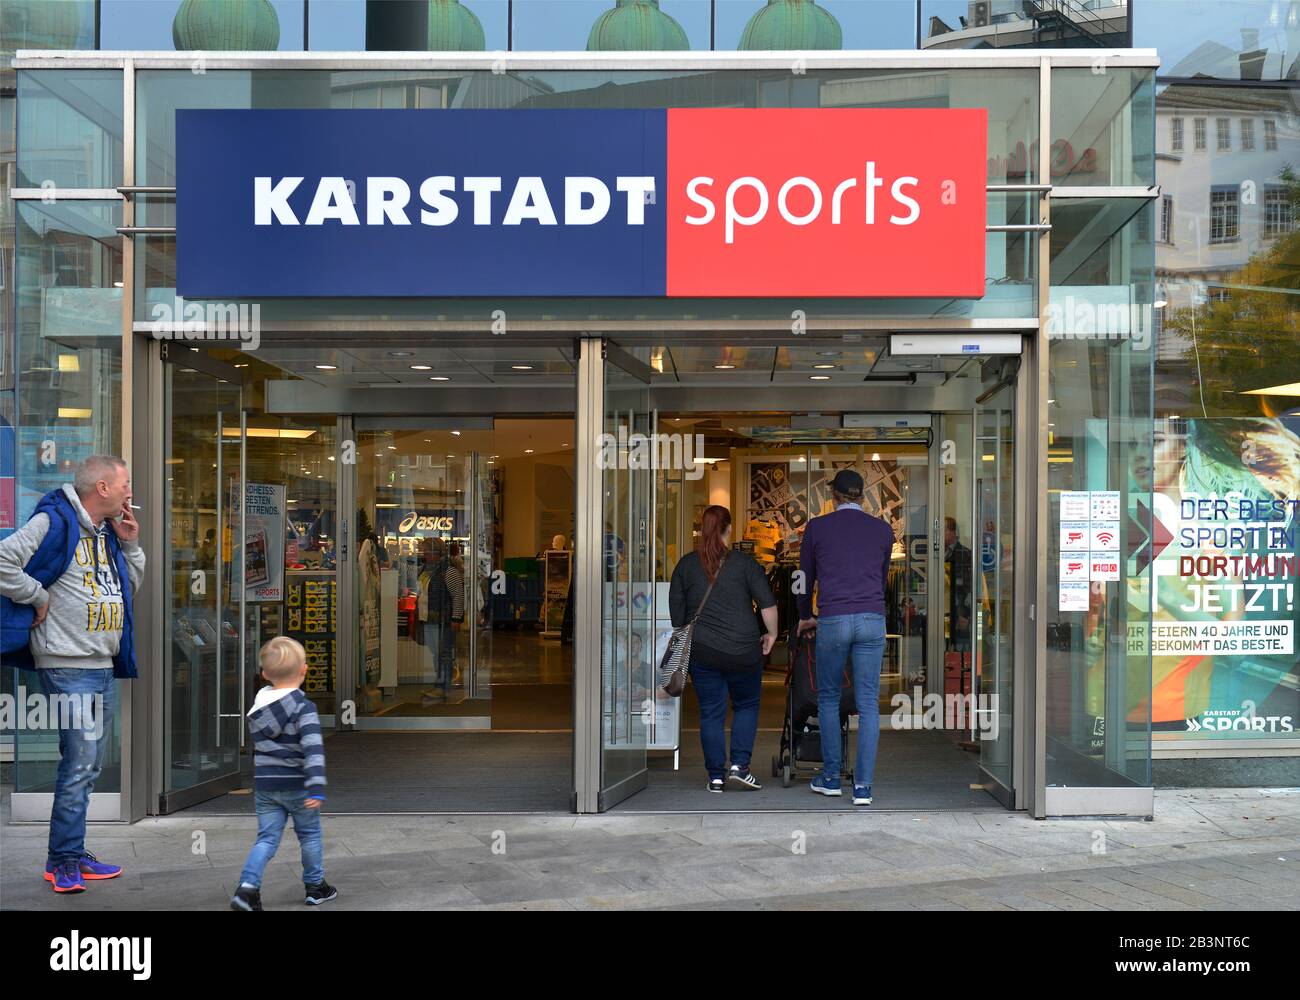 Karstadt Sports, Hansaplatz, Dortmund, Nordrhein-Westfalen, Deutschland  Stock Photo - Alamy